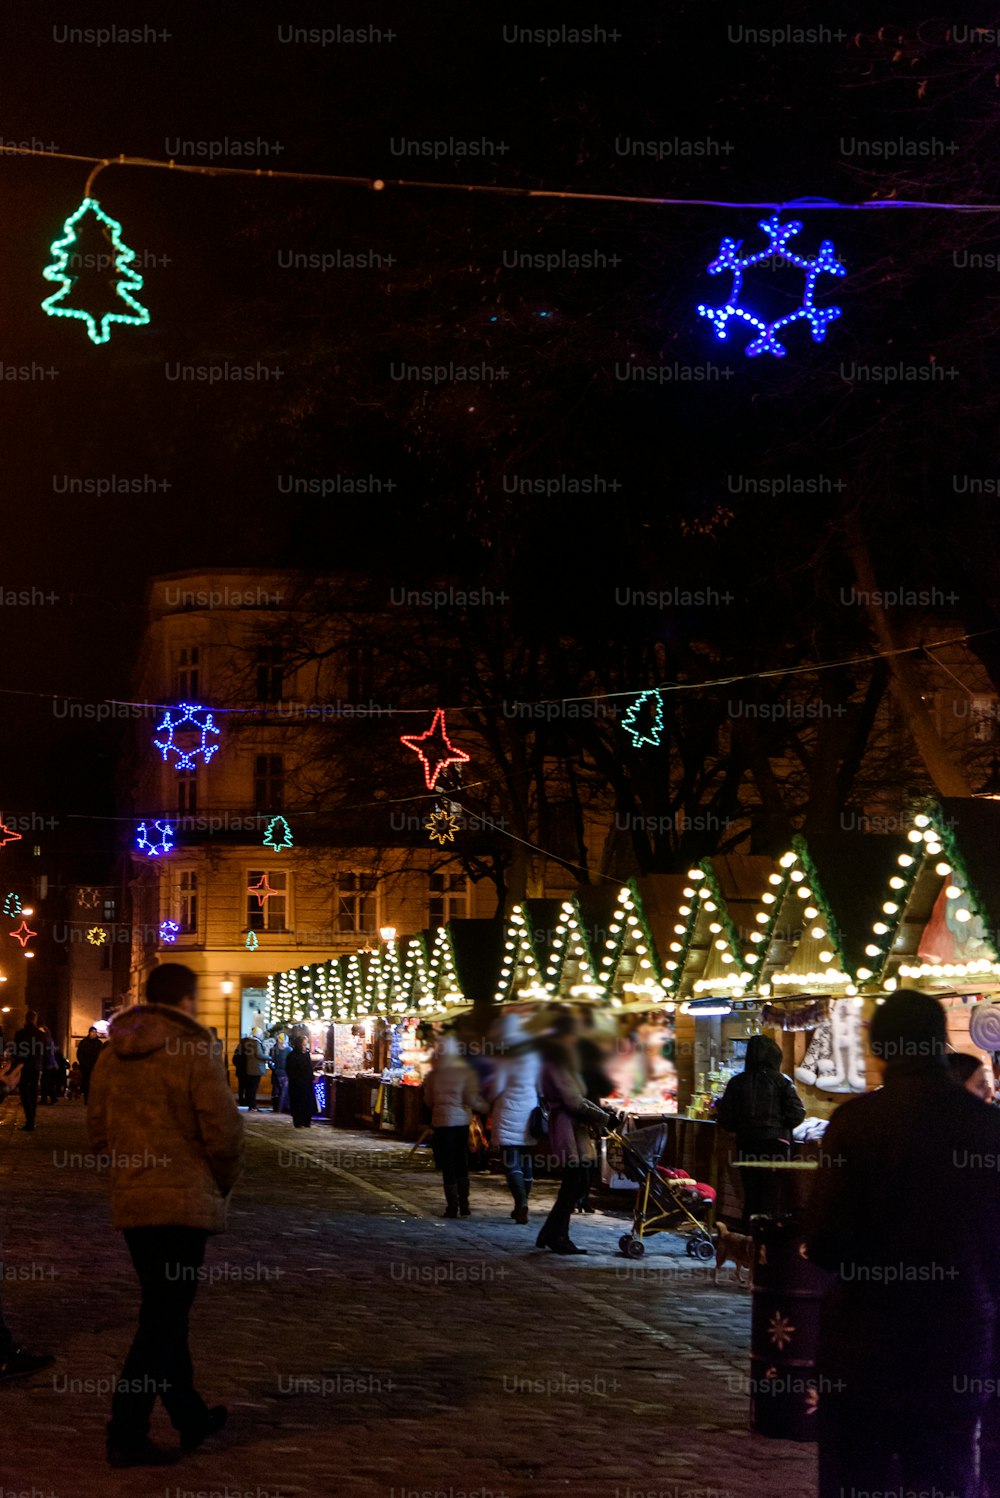 Hermoso increíble centro de la ciudad decorado para las vacaciones de Navidad en invierno con luces por la noche